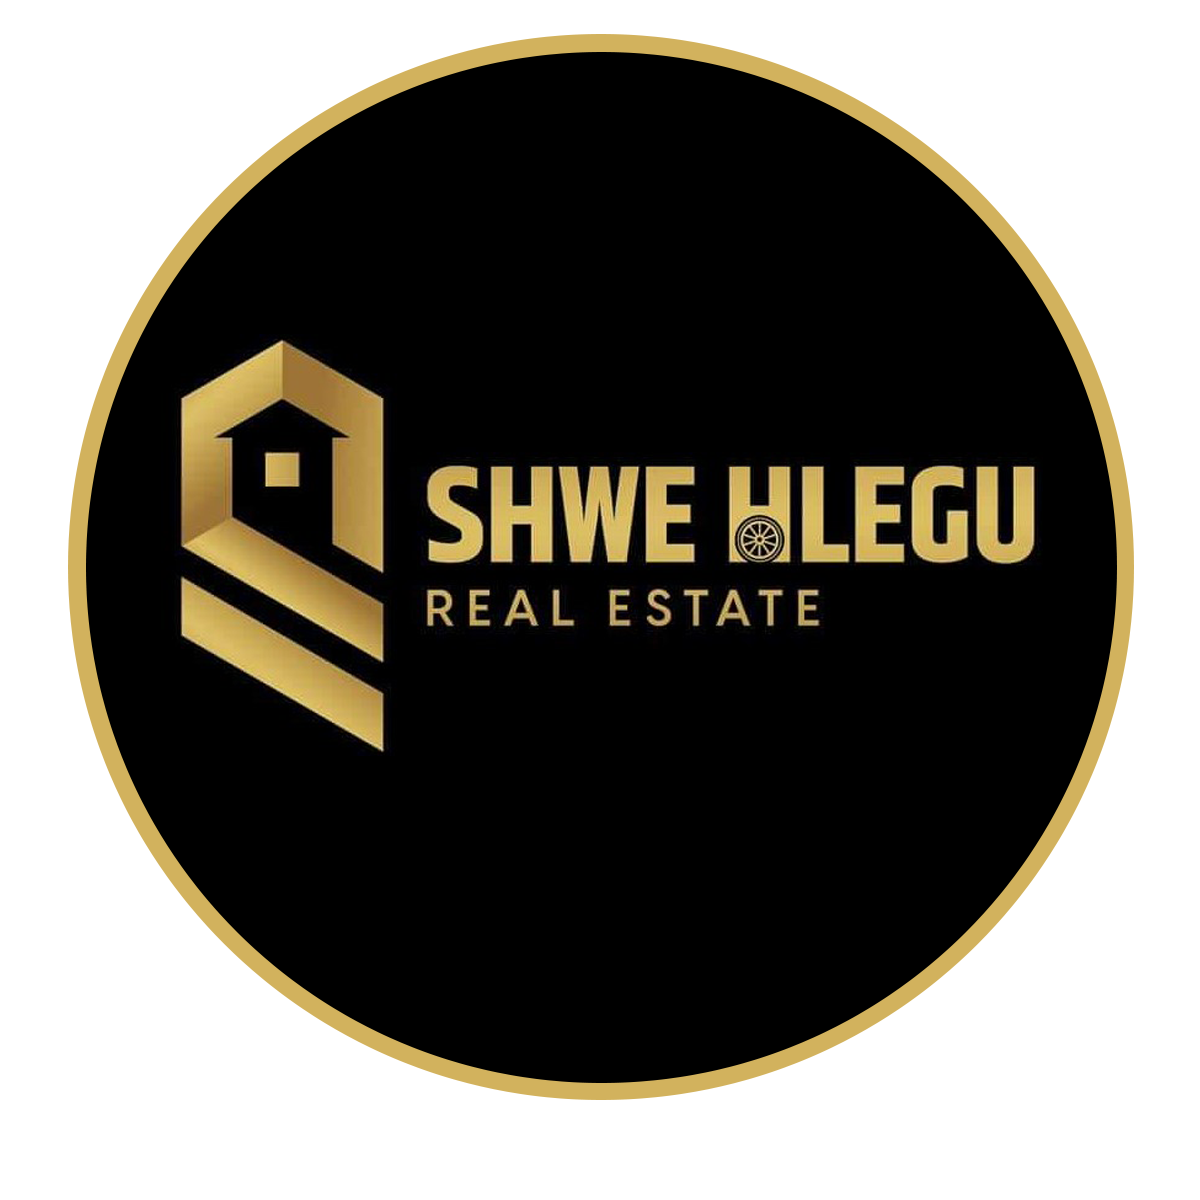 Shwe Hlegu Real Estate